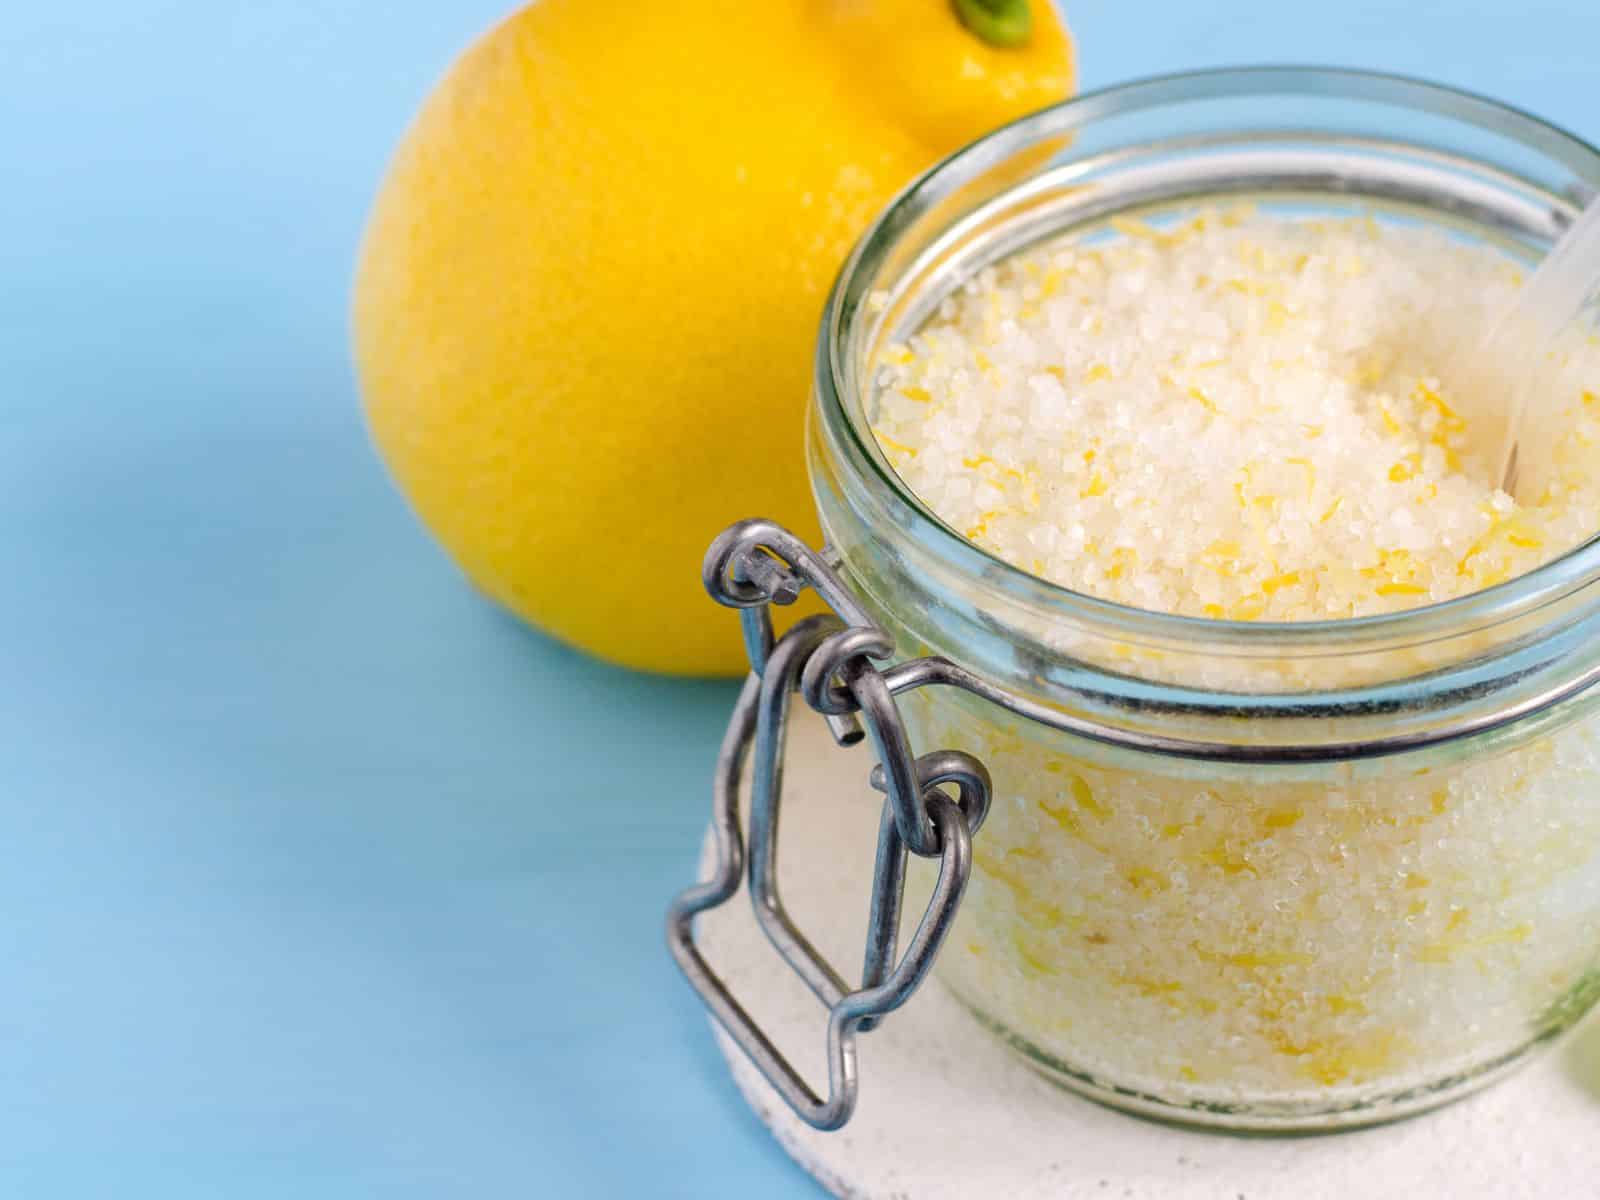 https://thriftyjinxy.com/wp-content/uploads/2013/12/homemade-lemon-sugar-scrub.jpg